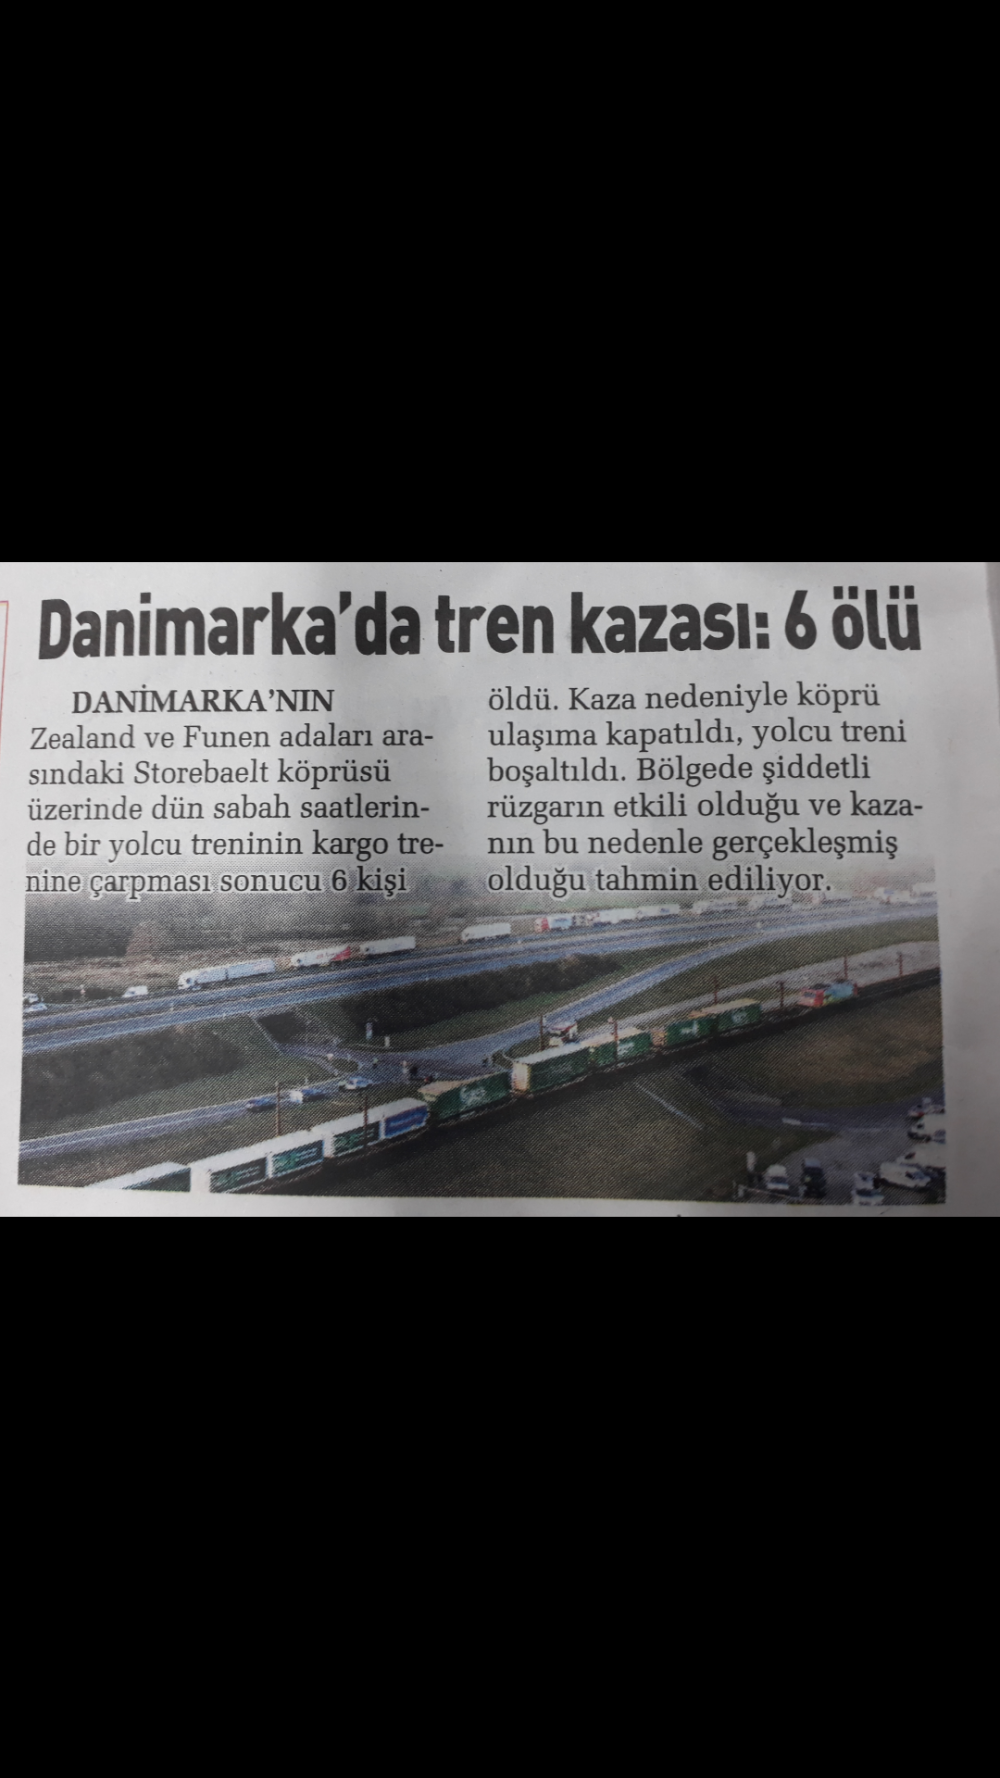 Danimarka'da tren kazası:6 ölü.